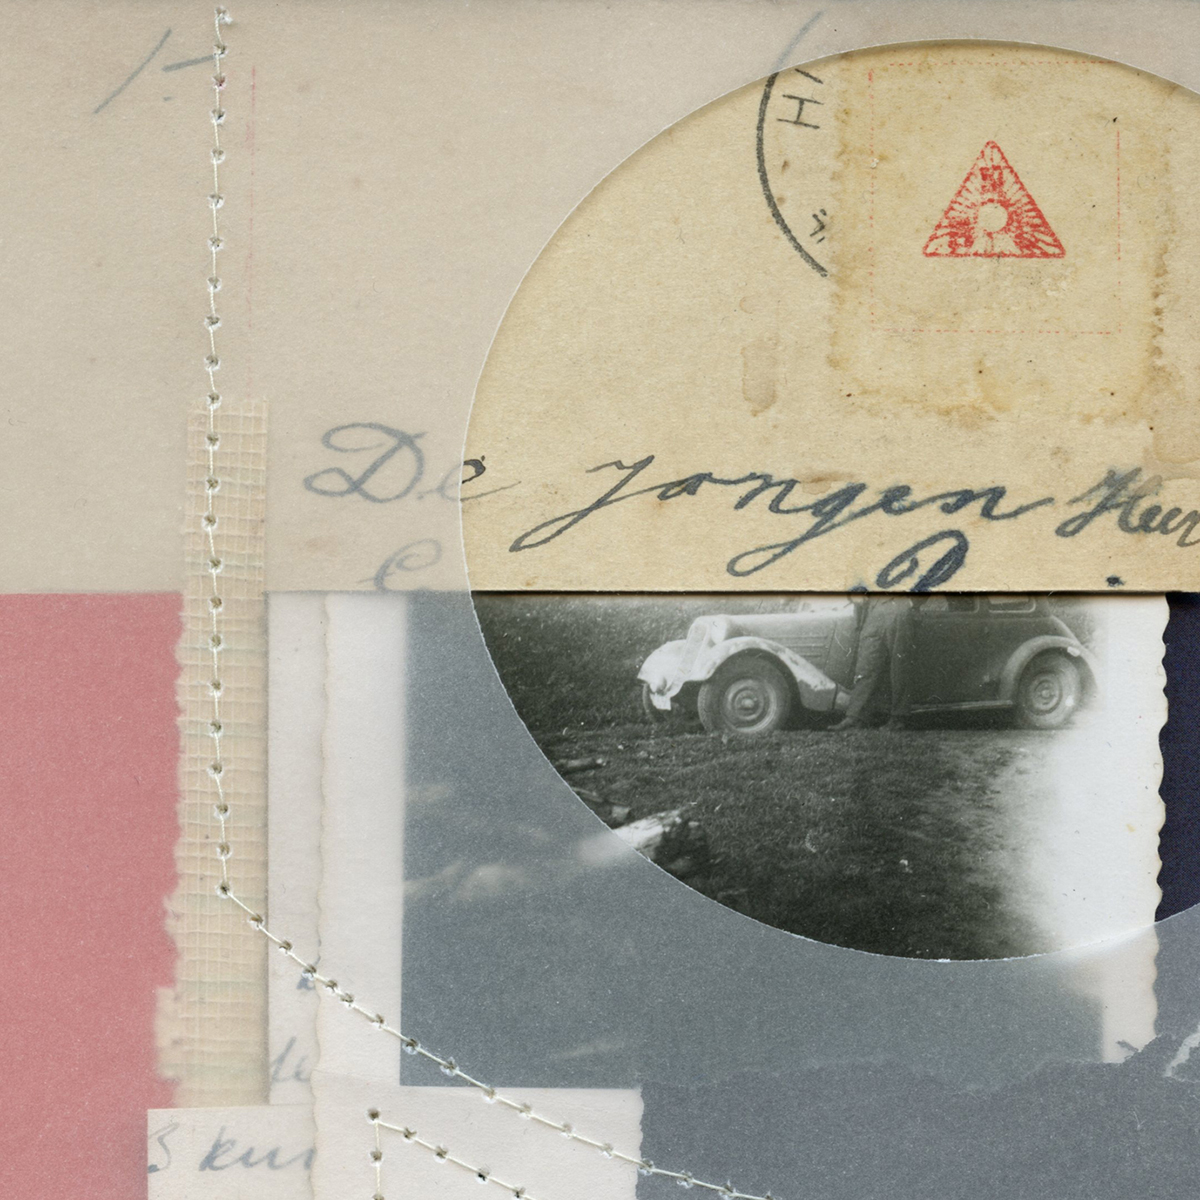 Poesie der kleinen Dinge #48, 202010 x 10 cm in 30 x 30 cmPapiercollage, Vintage Handschriften, genäht; gerahmt